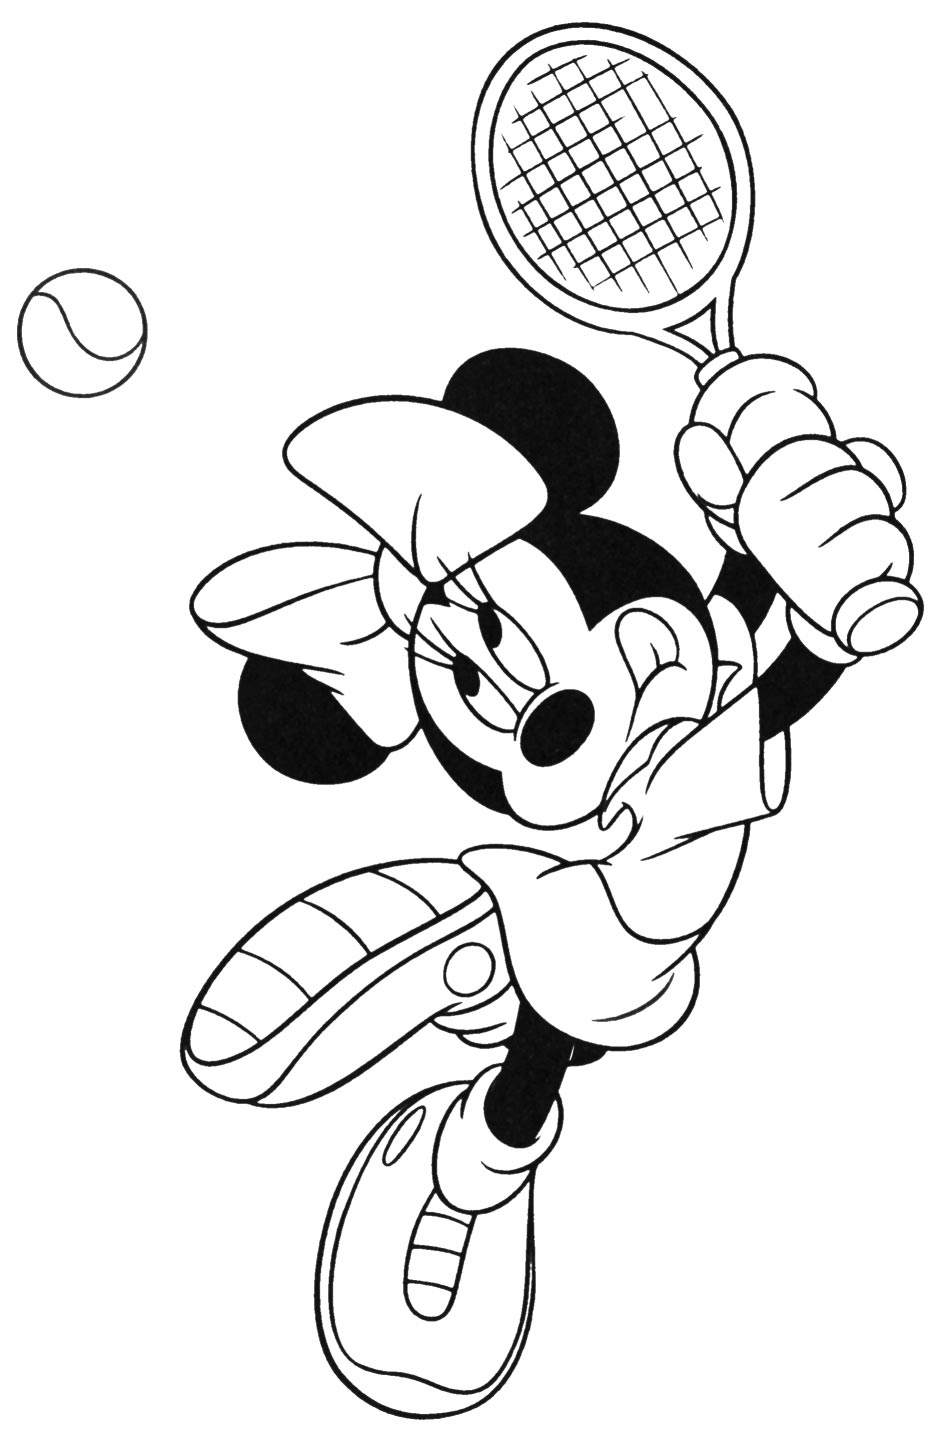 מיני מאוס משחקת טניס